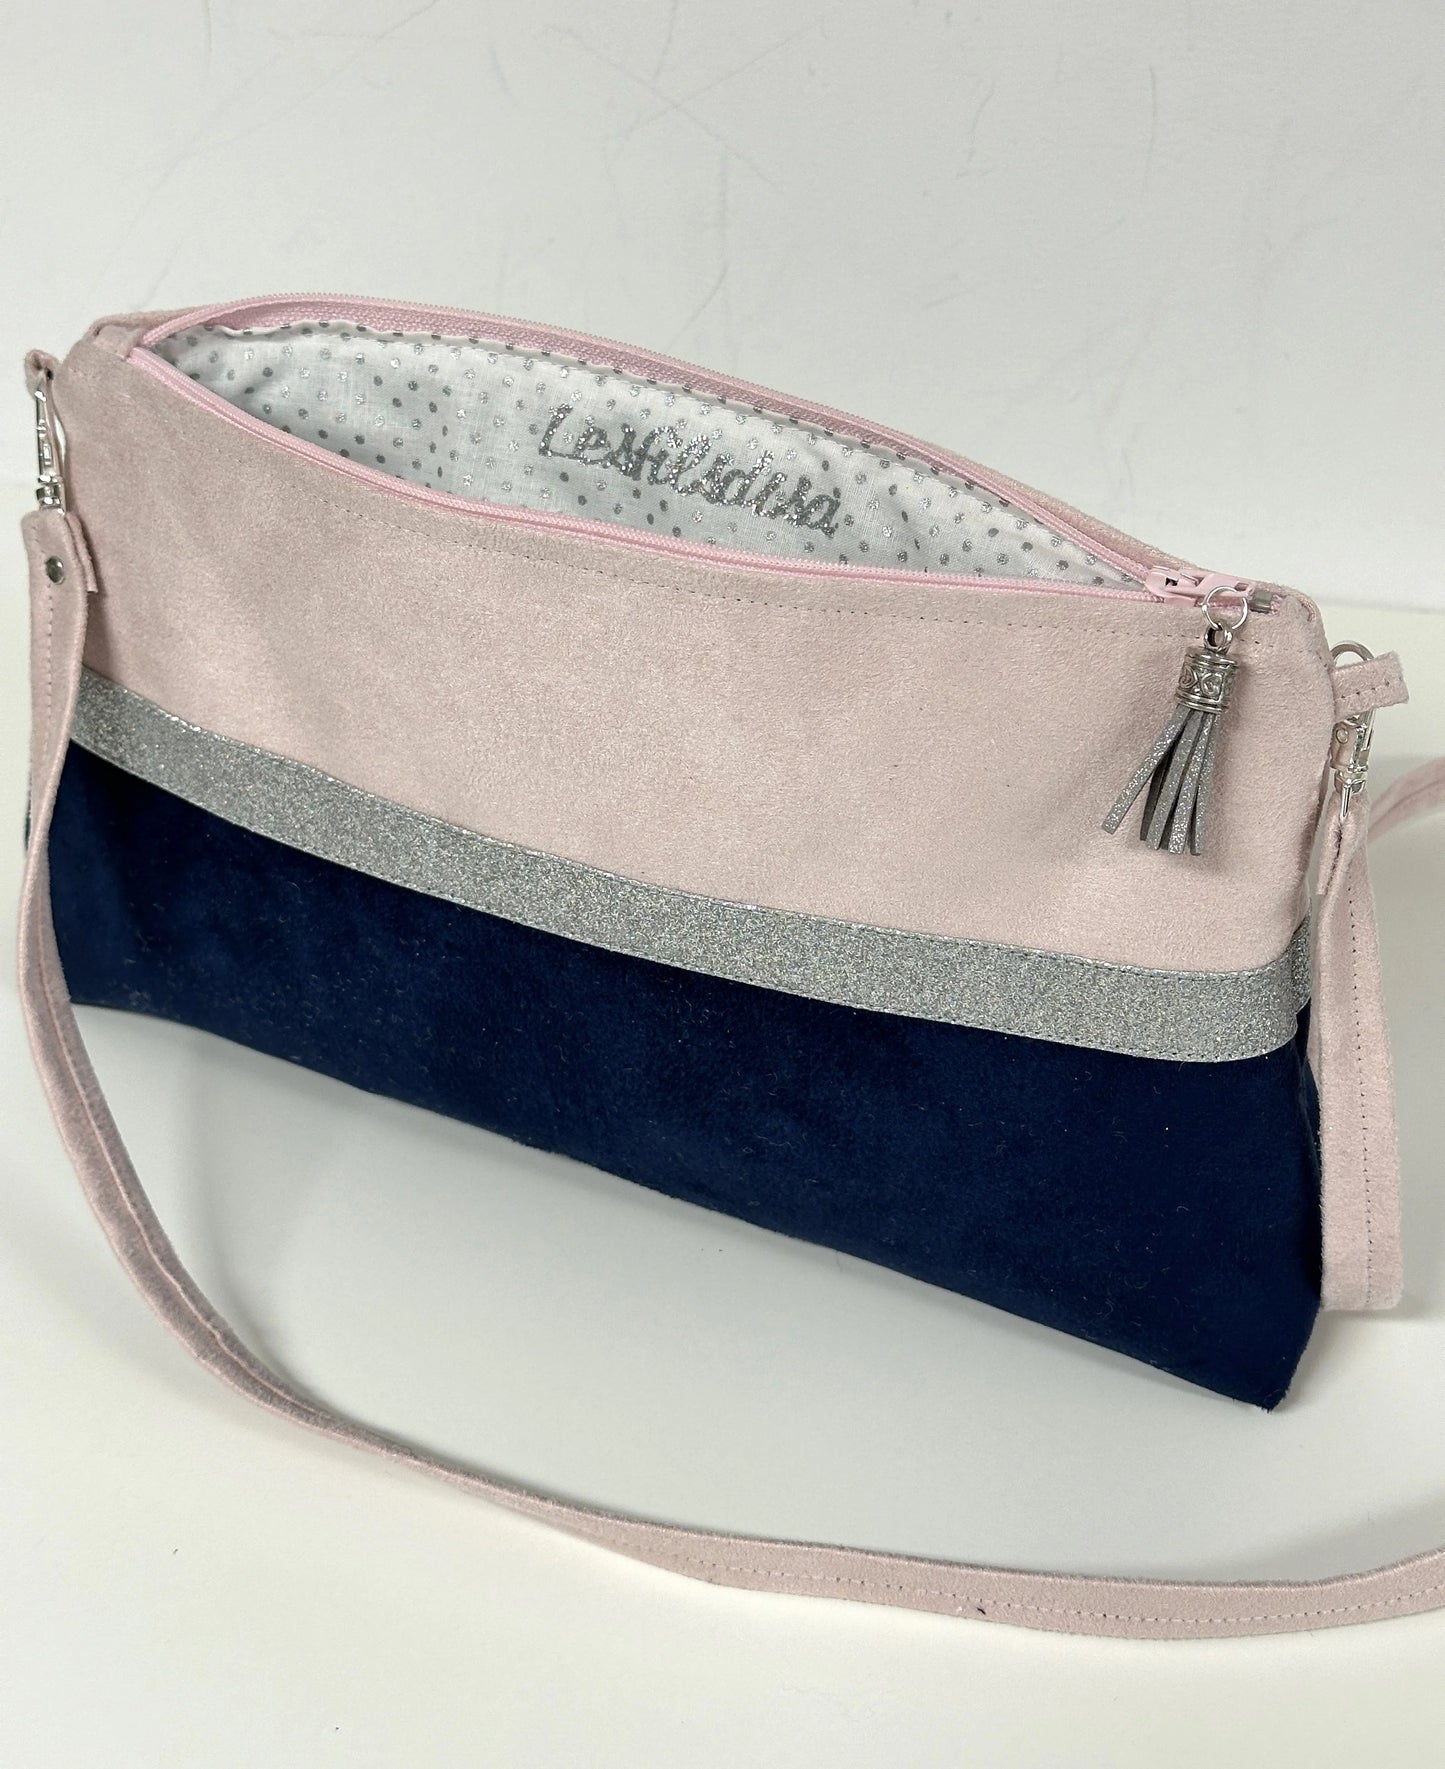 La doublure intérieure du  sac bandoulière rose pâle et bleu marine à paillettes argentées.